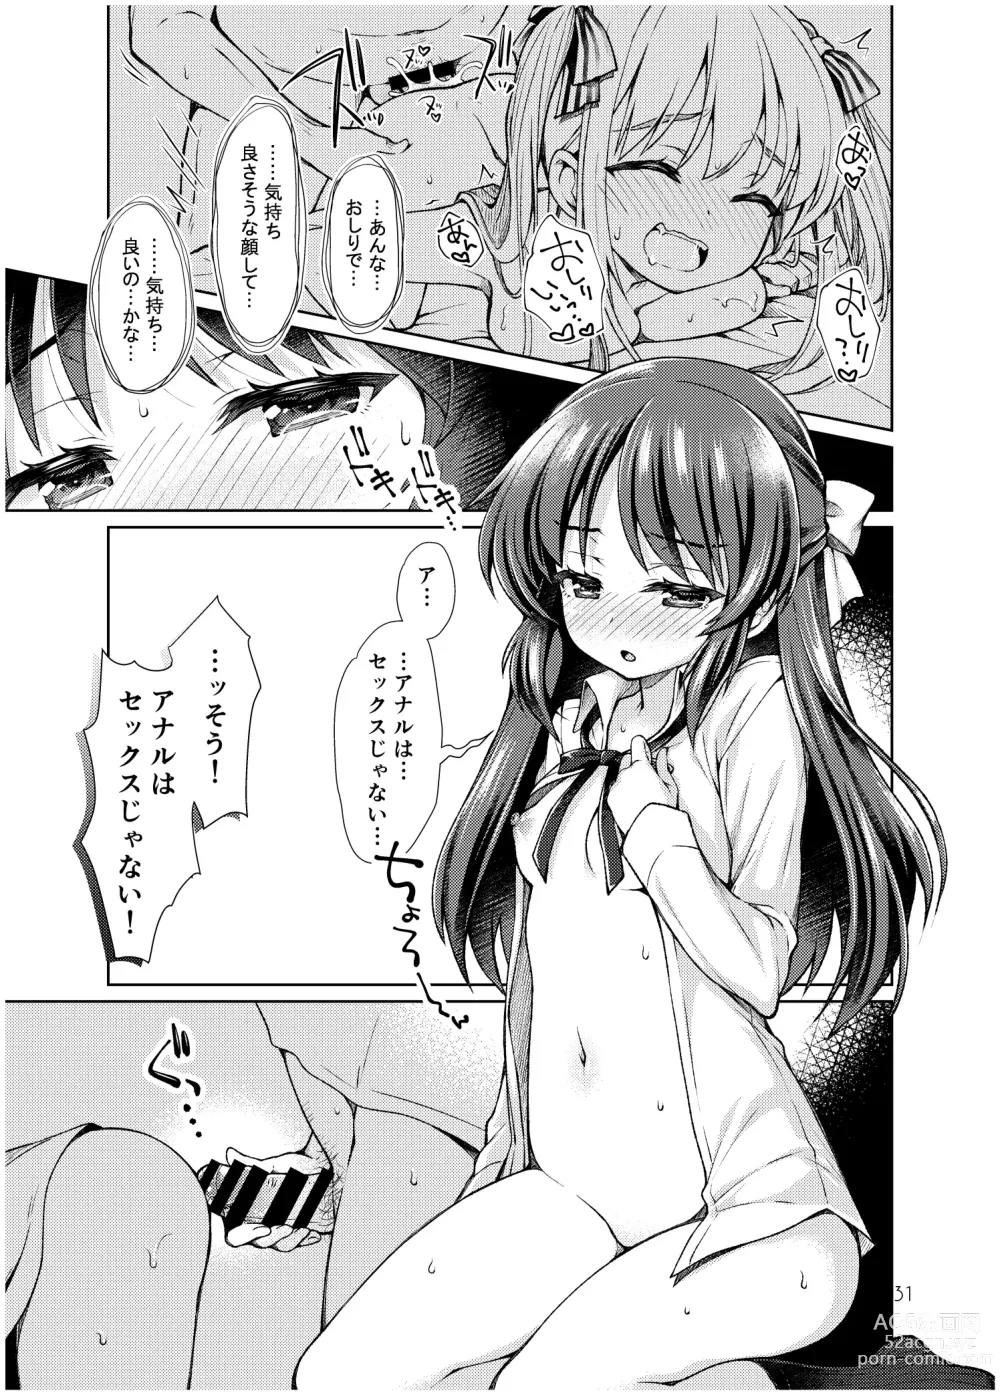 Page 30 of doujinshi Tachibana Arisu no Manga Matome